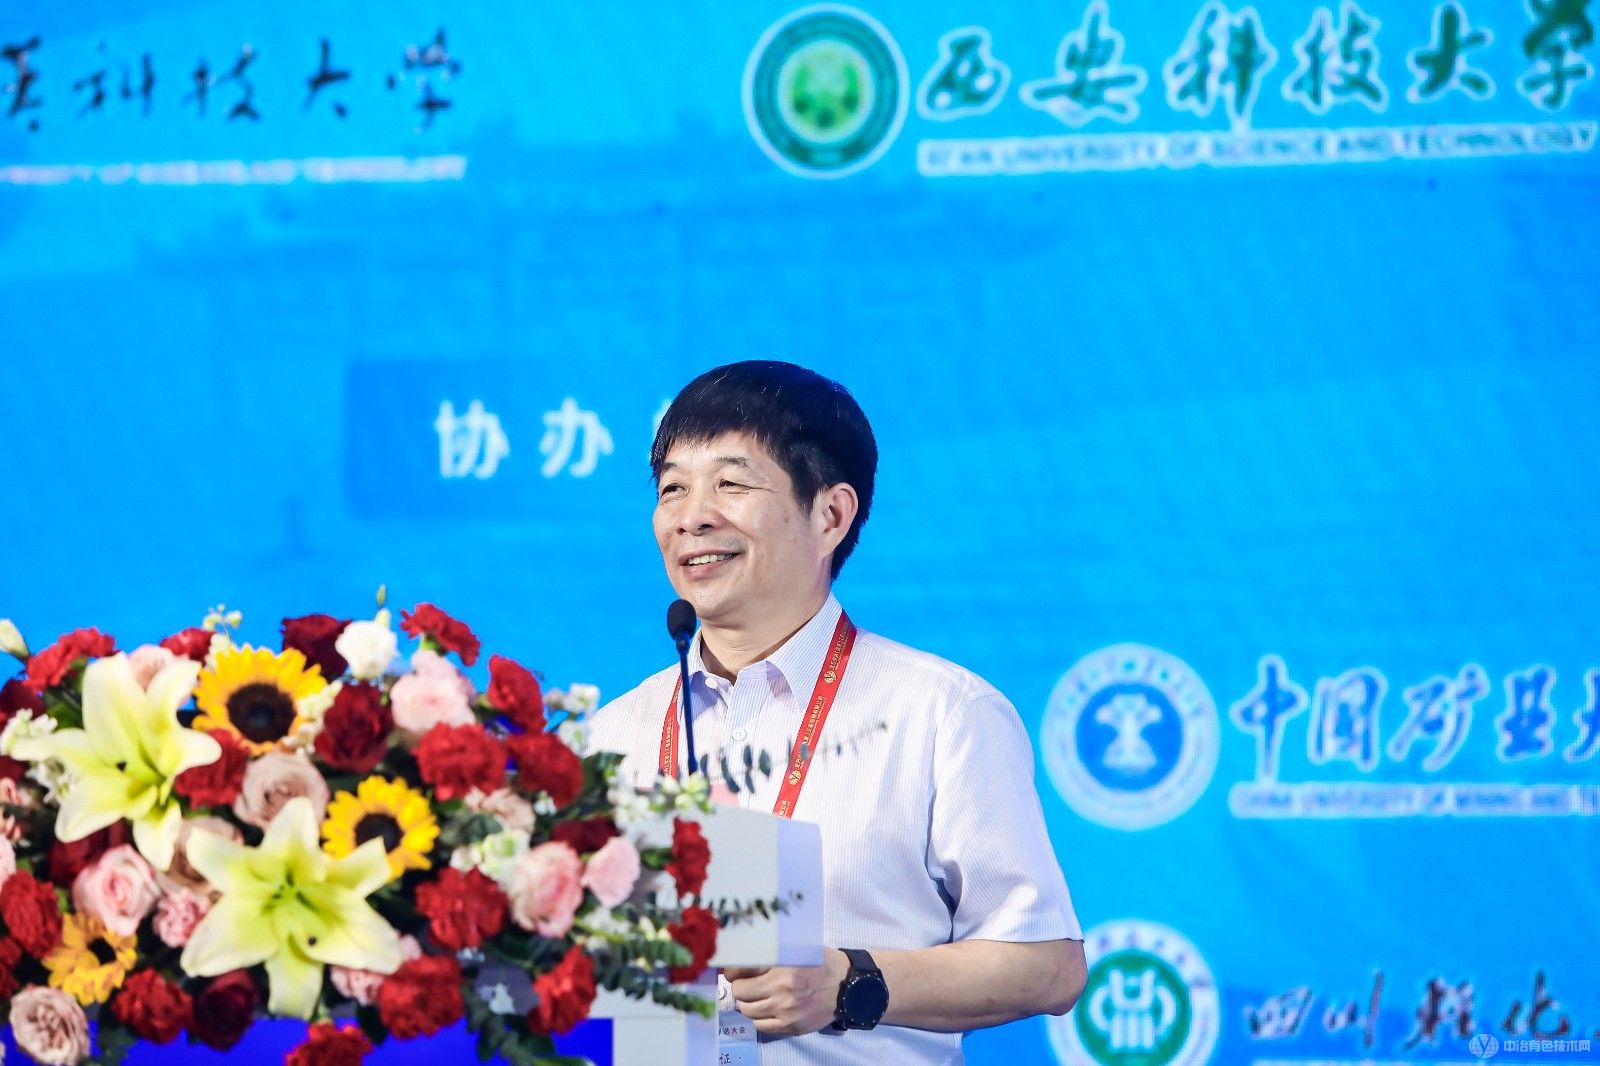 第五届中国浮选大会 现场照片